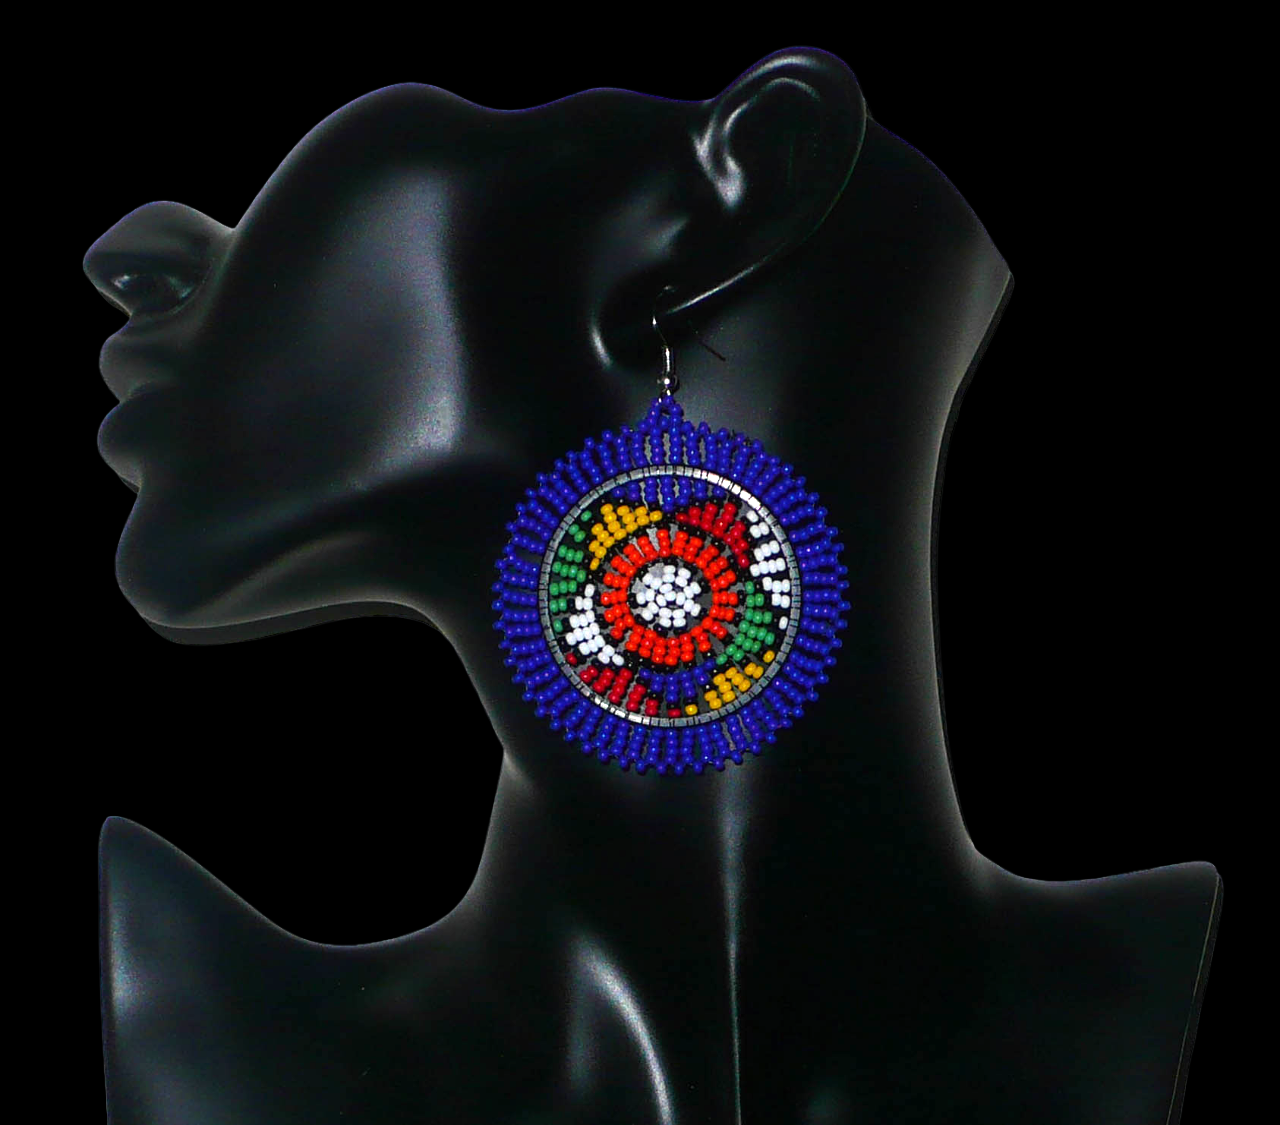 Boucles d'oreilles africaines rondes à motifs ethniques sud-africains composées de perles de rocaille bleues et multicolores. Elles mesurent 7,5 cm de long et 5,5 cm de large et se portent avec des crochets en acier inoxydable sur des oreilles percées. Timeless Fineries